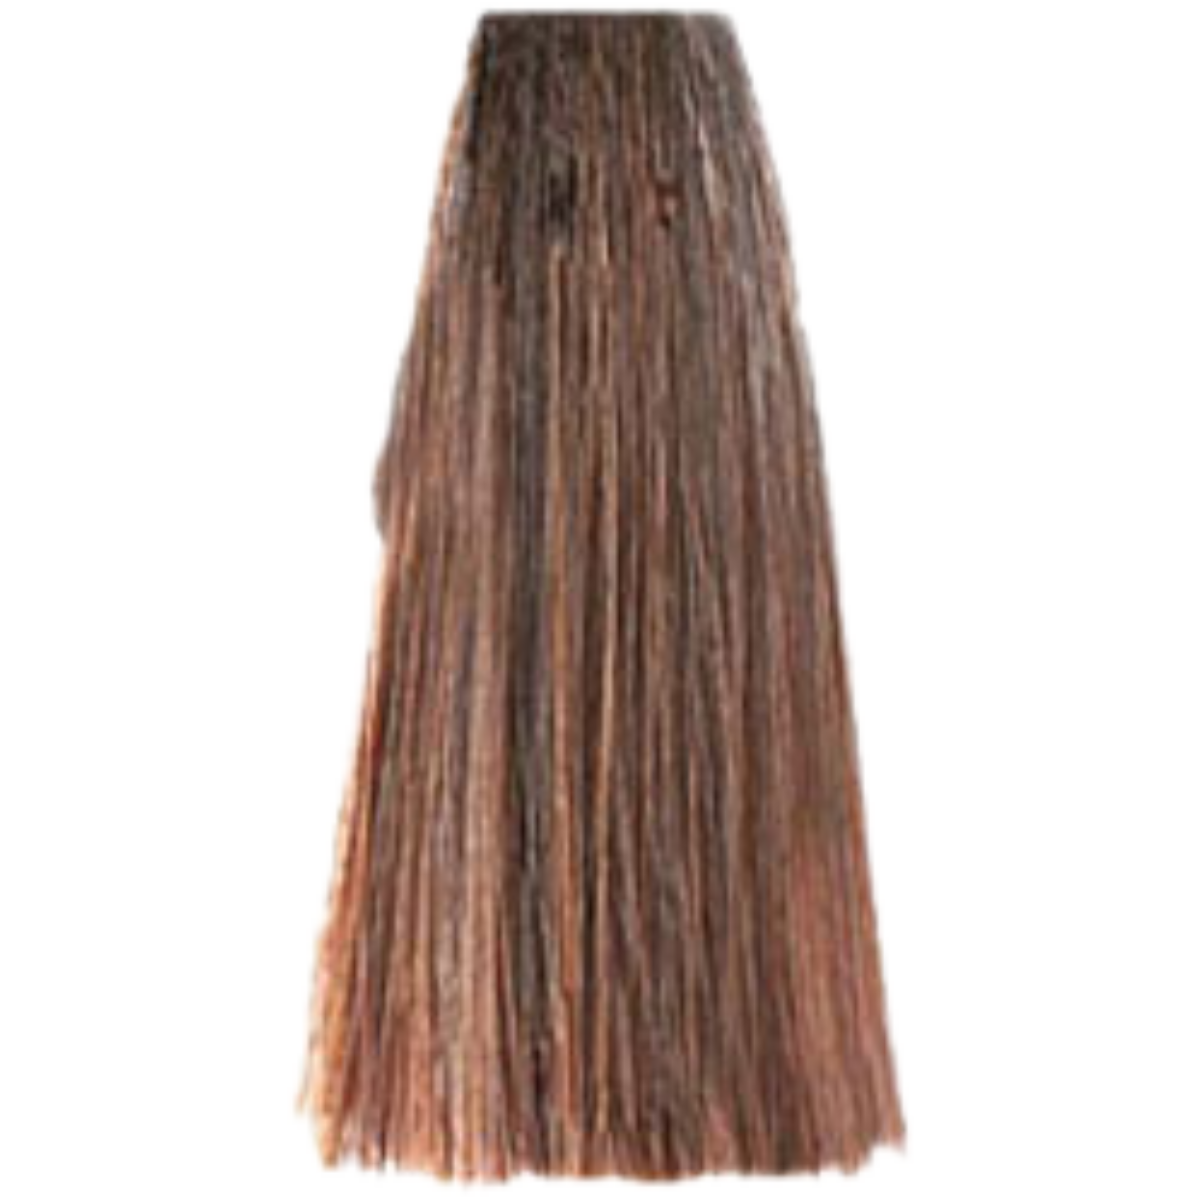 צבע שיער בסיס 9.00 LIGHT INTENSE BLONDE פארמויטה FarmaVita צבע לשיער 100 גרם